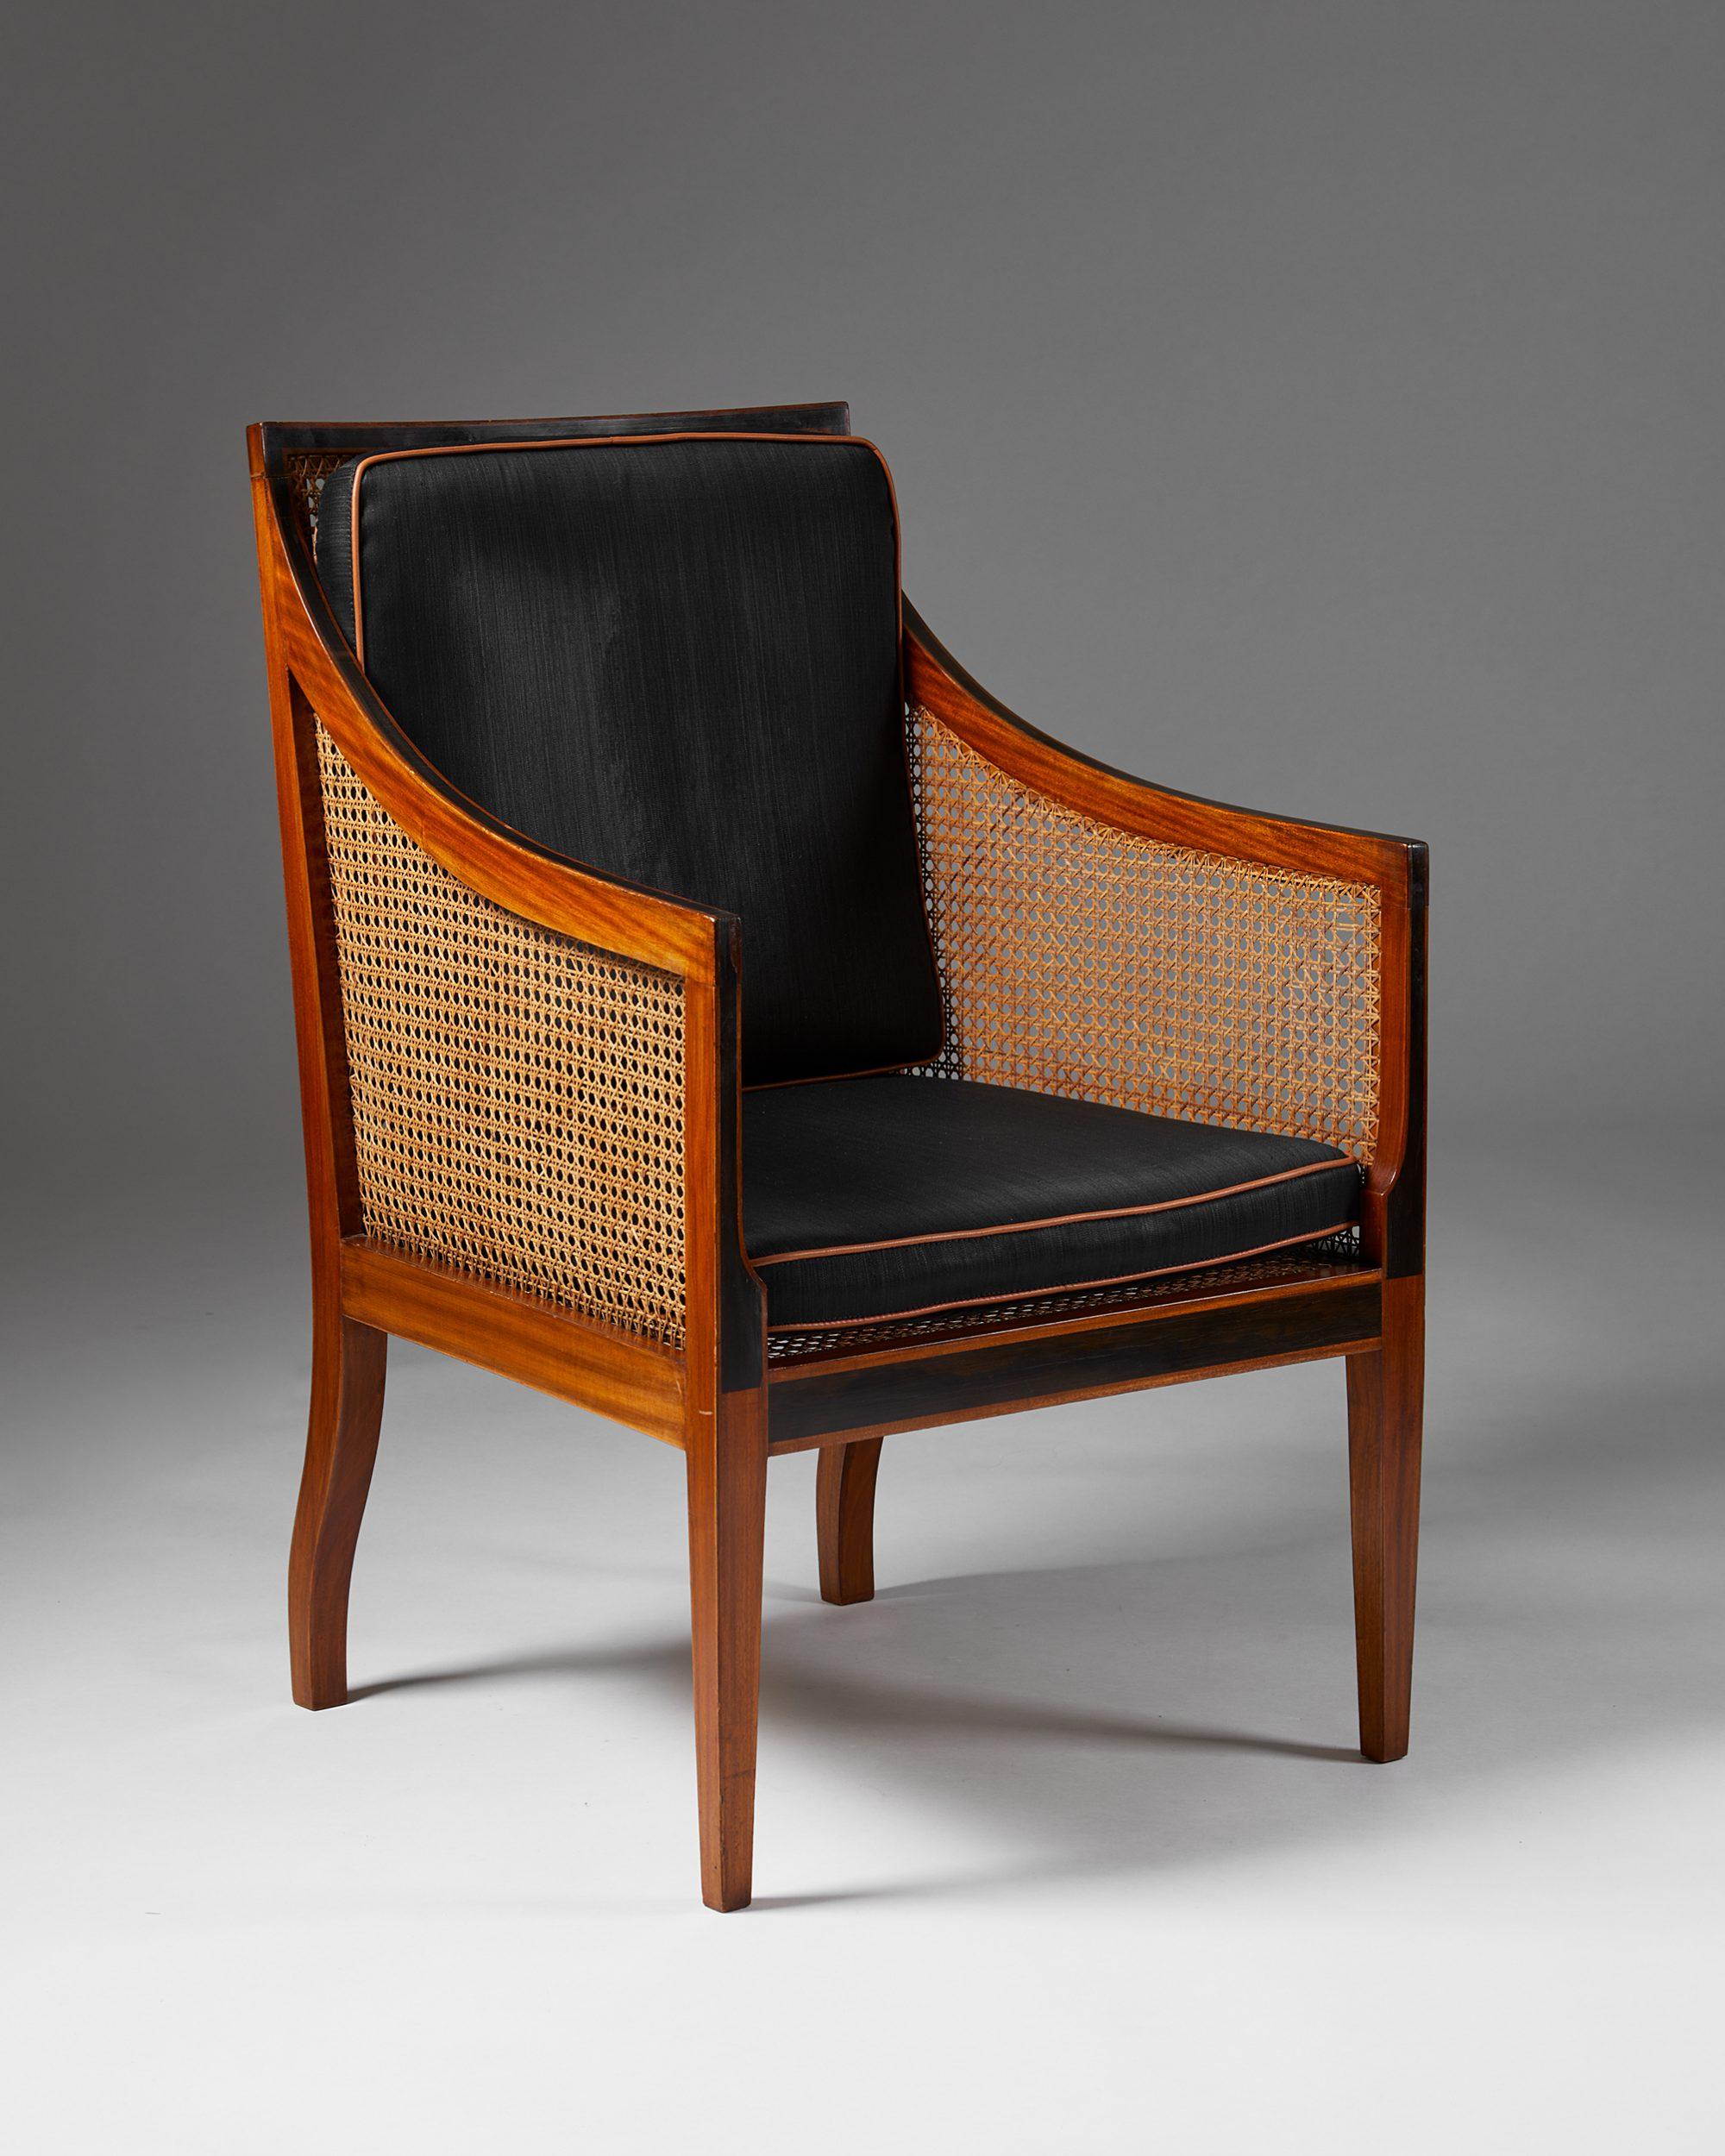 Sessel Modell 4488, entworfen von Kaare Klint für Rud. Rasmussen,
Dänemark, 1930er Jahre.

Polsterung aus Mahagoni, Ebenholz, Schilfrohr und schwarzem Rosshaar mit cognacfarbenen Lederkedern.

Klint fand den englischen Stuhl seines Freundes aus dem